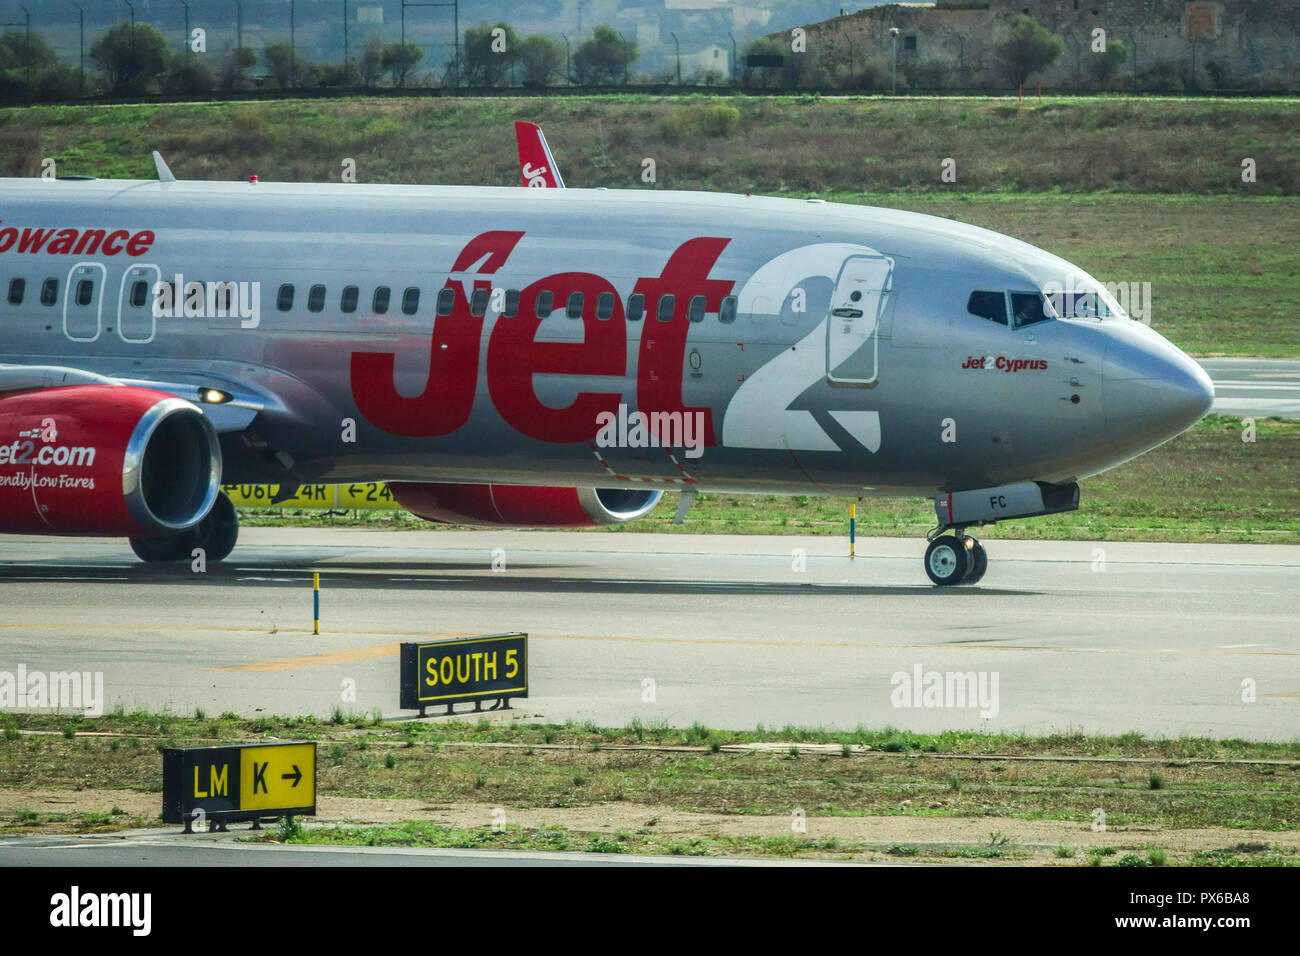 Jet2 avion sur la piste, Palma de Majorque, Espagne Banque D'Images